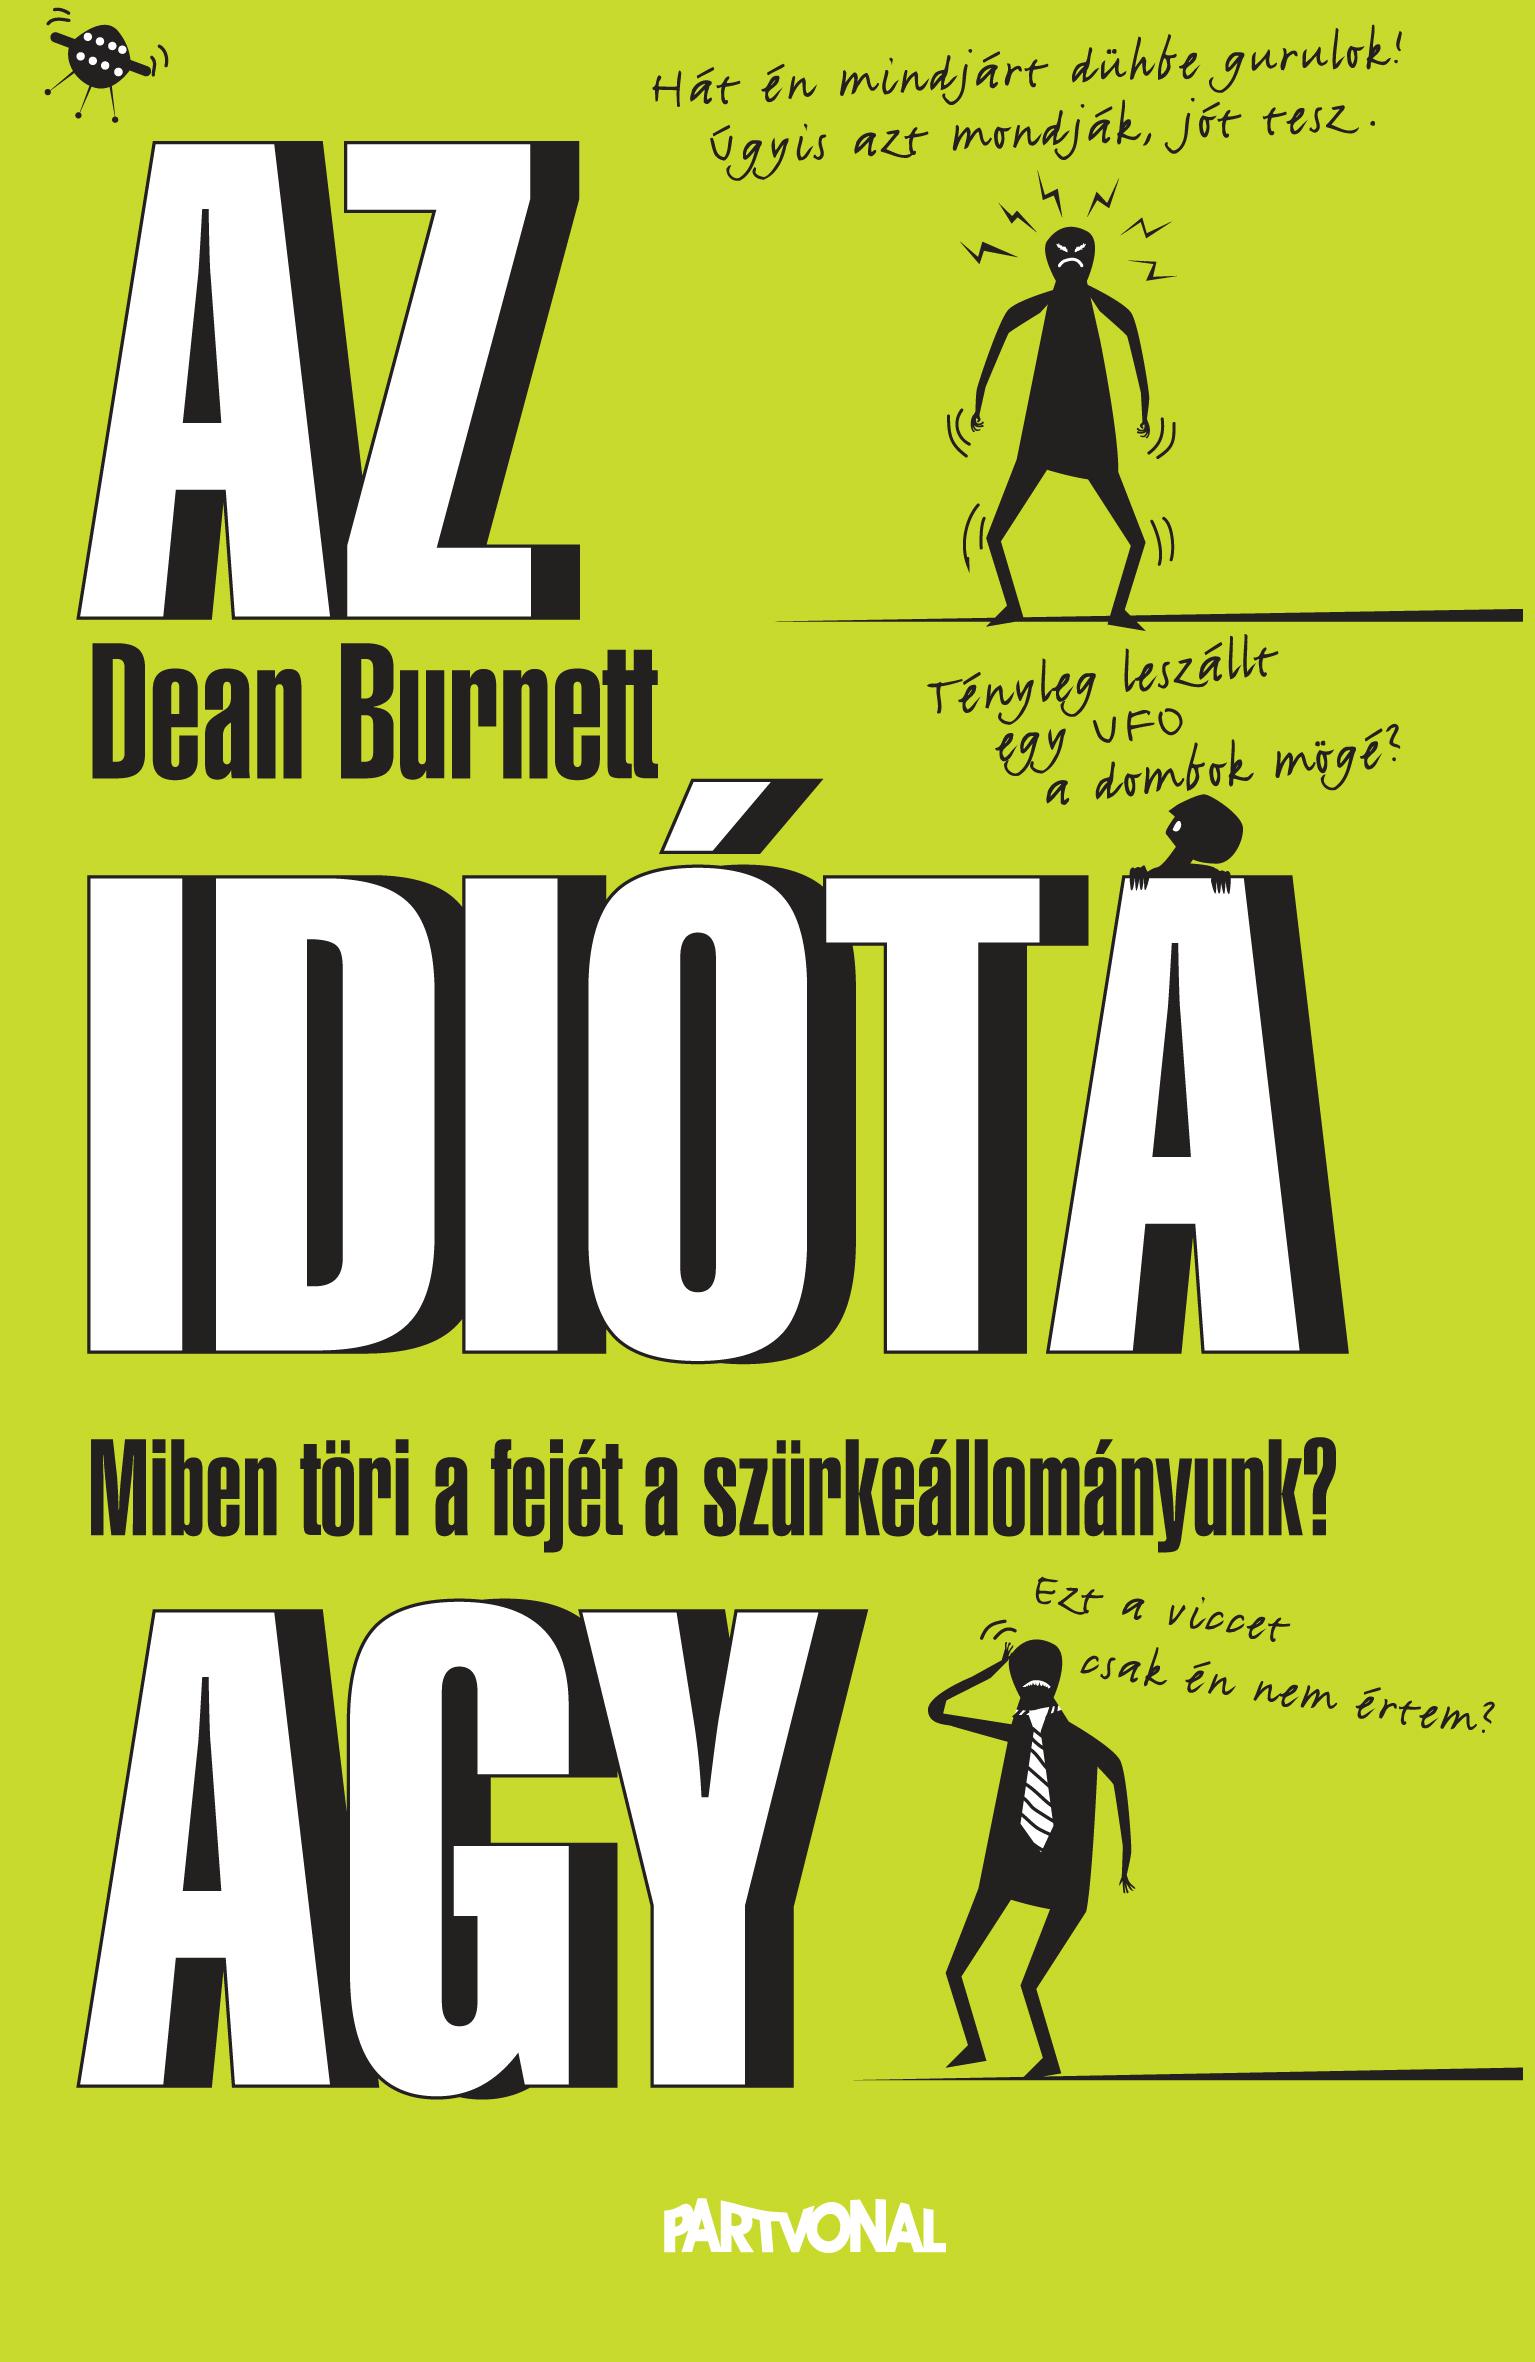 Dean Burnett - Az idióta agy - Miben töri a fejét a szürkeállományunk? [outlet]